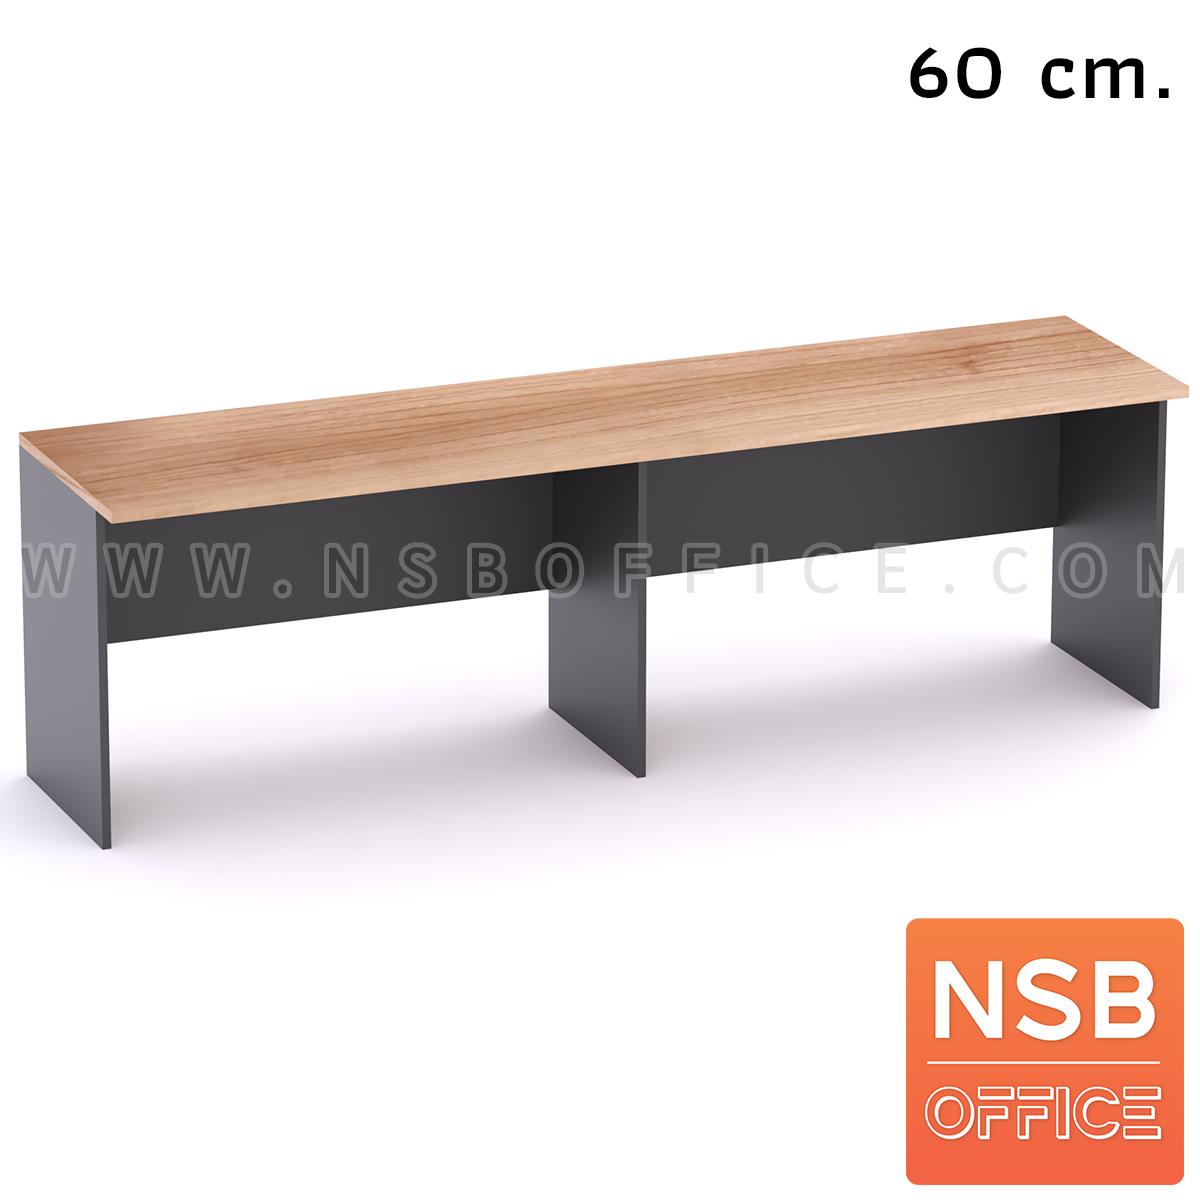 A05A144:โต๊ะประชุมหน้าตรง 3 ที่นั่ง  ขนาด 240W*60D cm.  Top ยื่น 10 ซม. เมลามีน